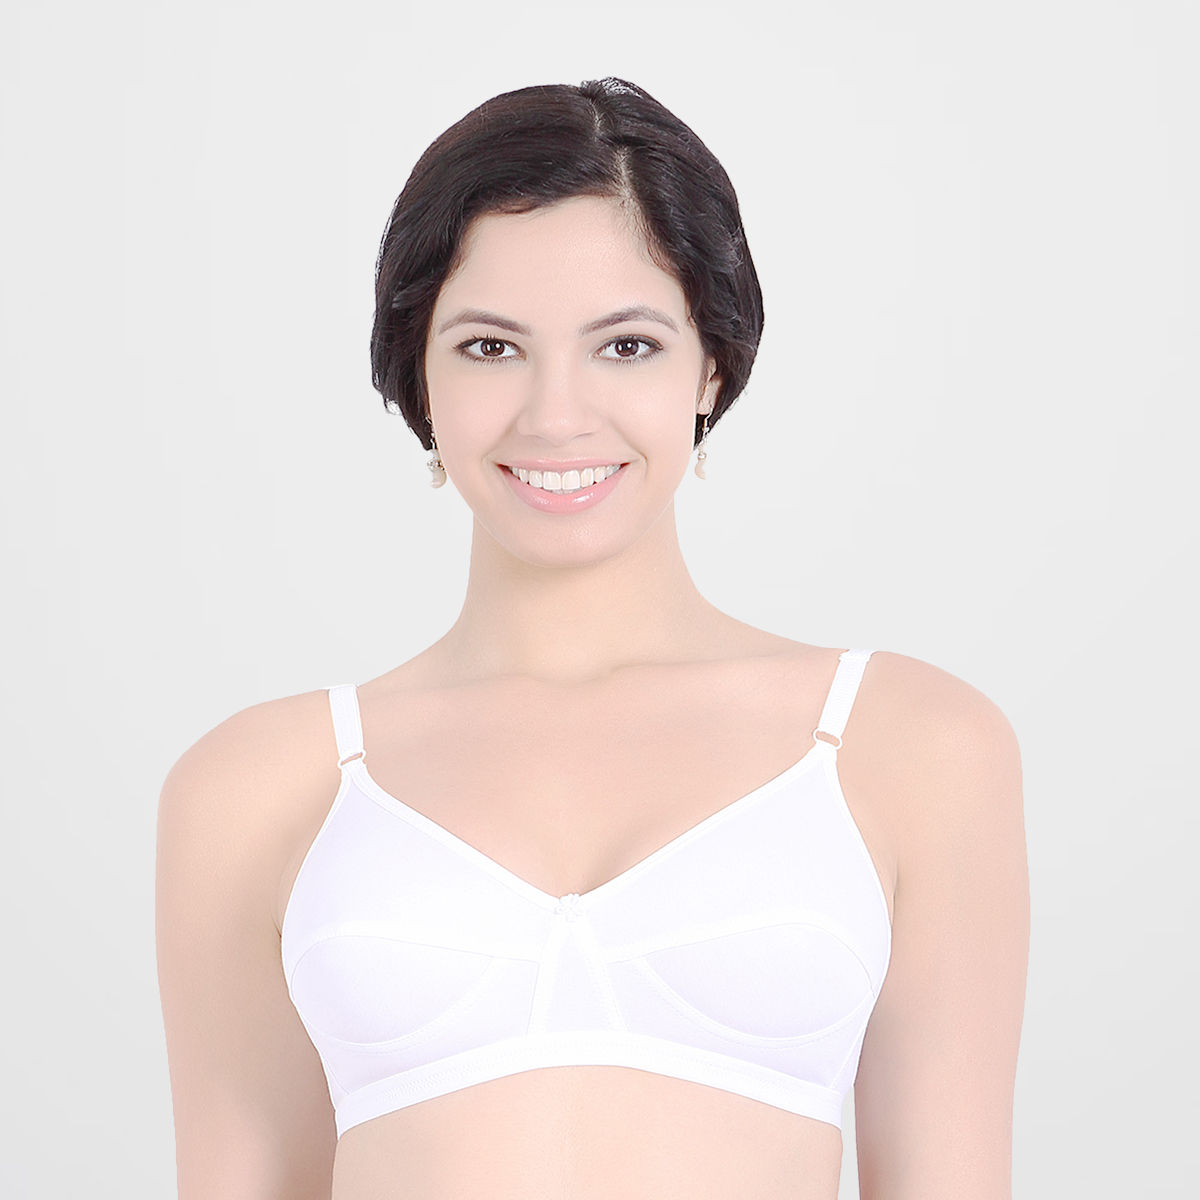 Sonari Ice Women's Cotton Bra - White (40C)